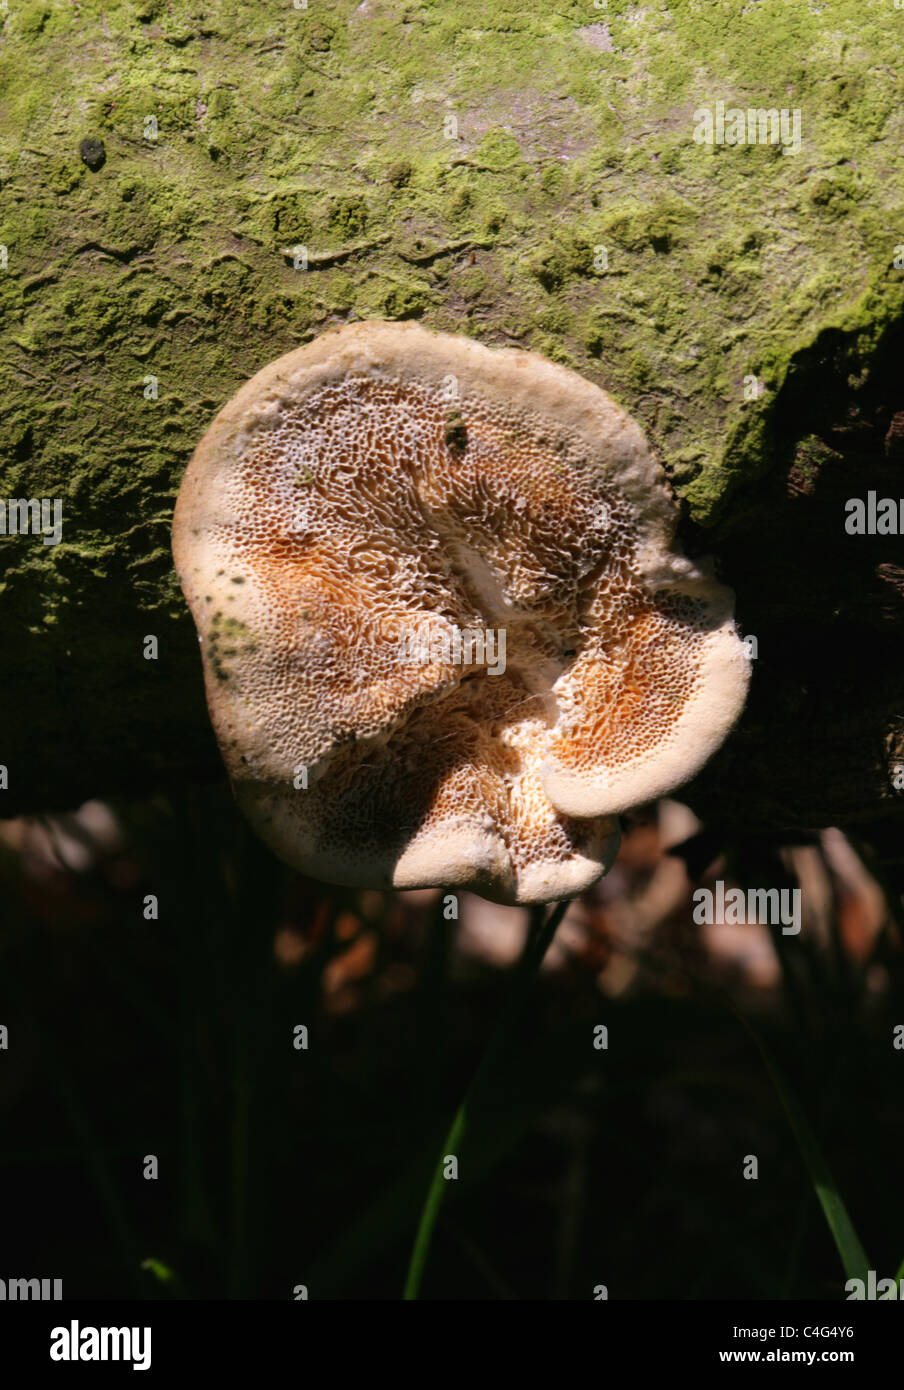 Cinnamon Bracket Fungus, Hapalopilus nidulans (H. rutilans), Polyporaceae, Hapalopilaceae. Growing on a Fallen Oak Branch, June. Stock Photo